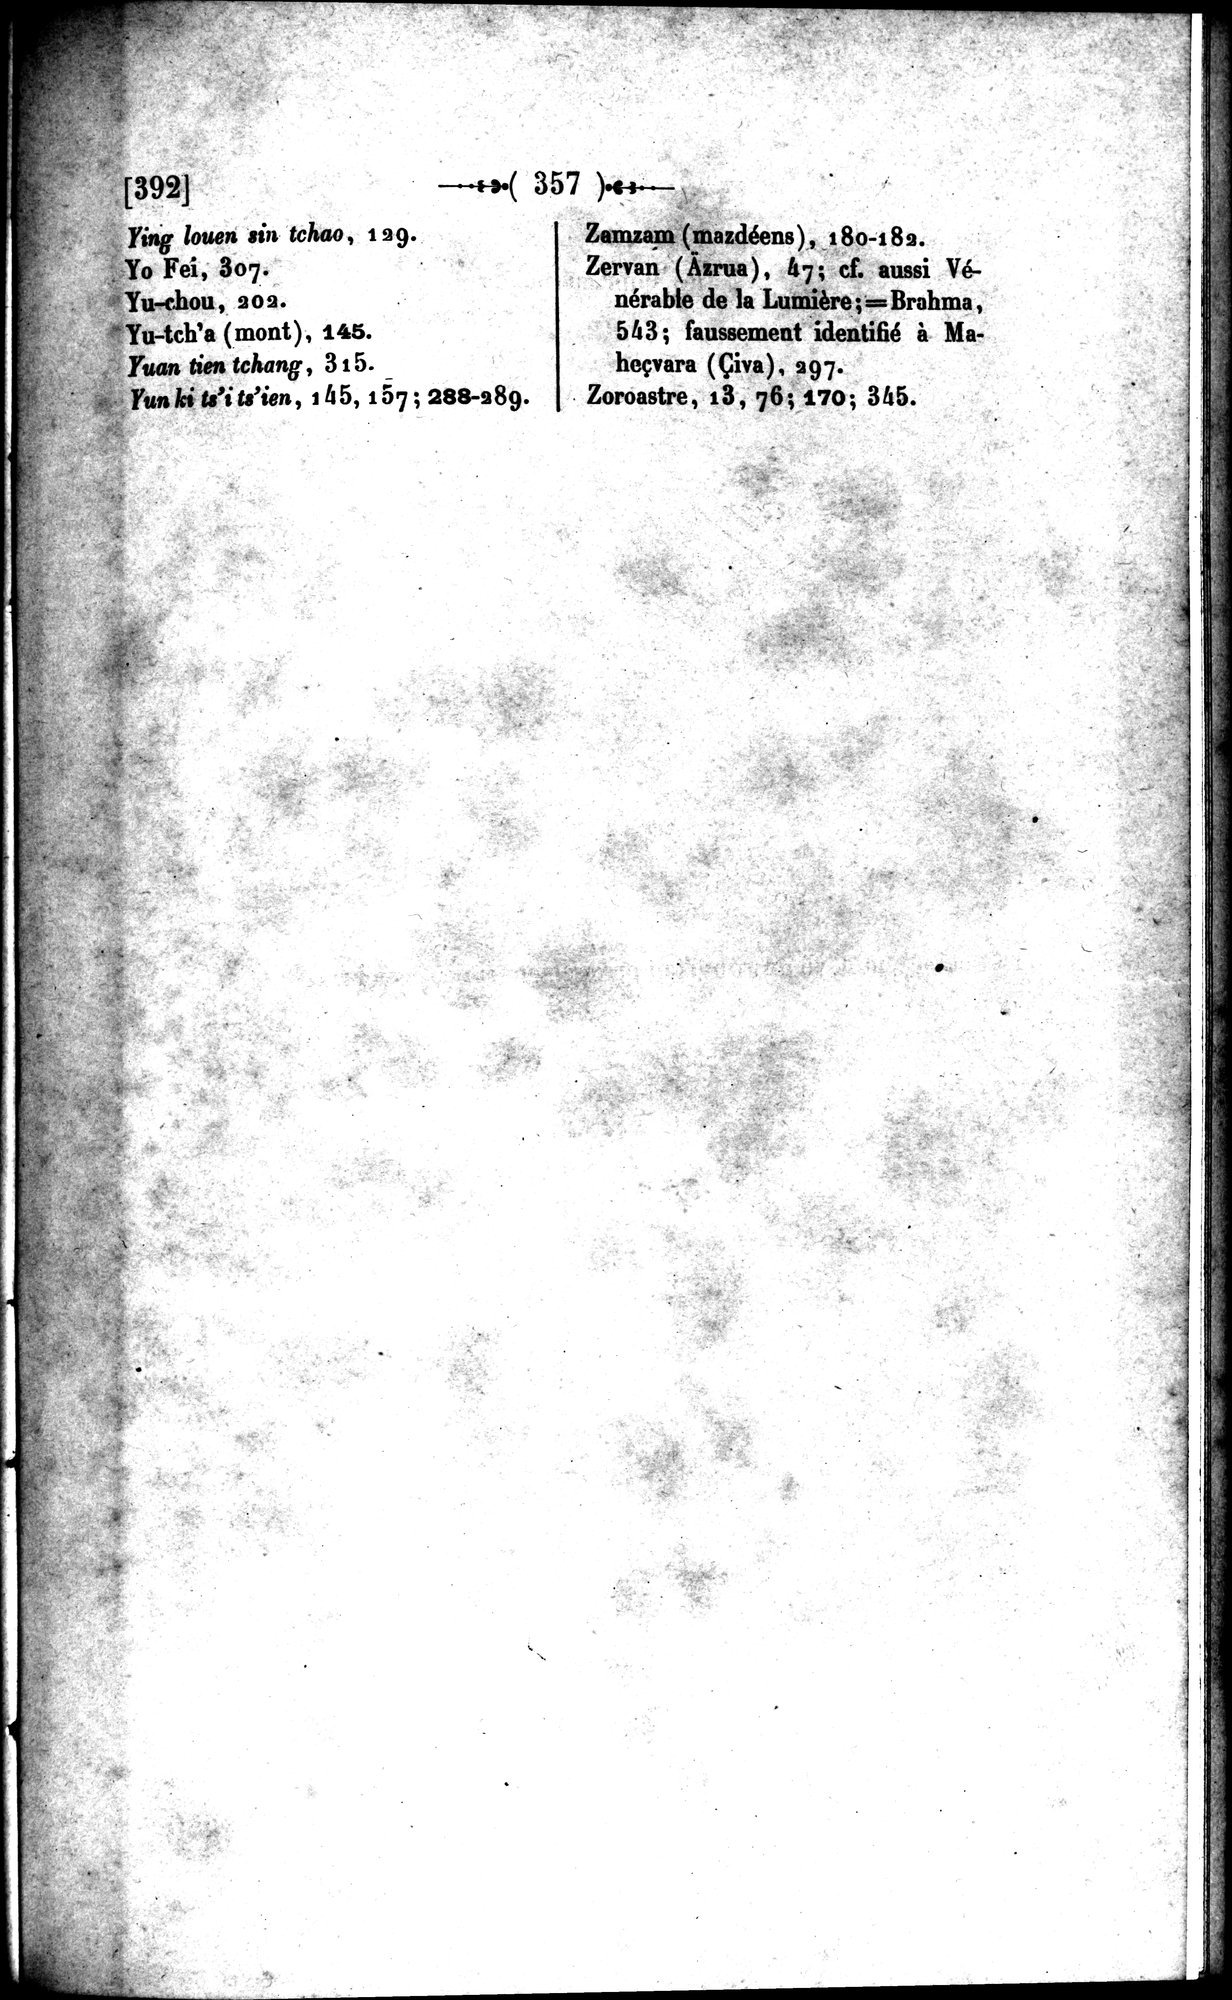 Un traité manichéen retrouvé en Chine : vol.1 / Page 367 (Grayscale High Resolution Image)